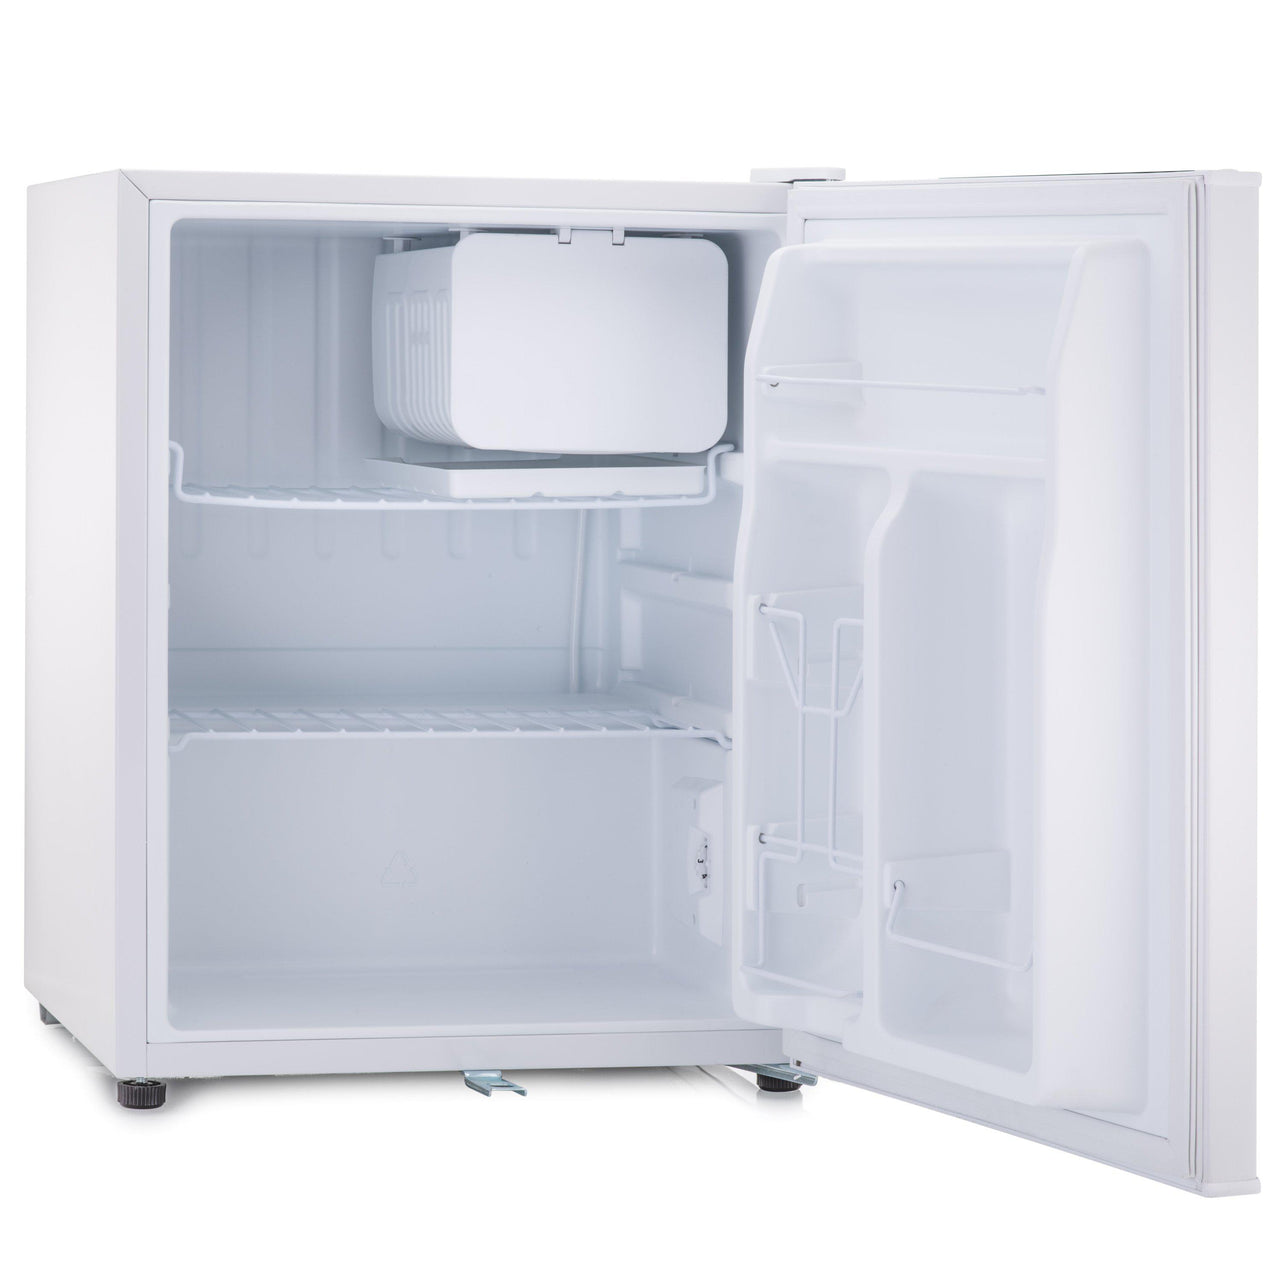 Subcold Eco 75 litre table top fridge white interior